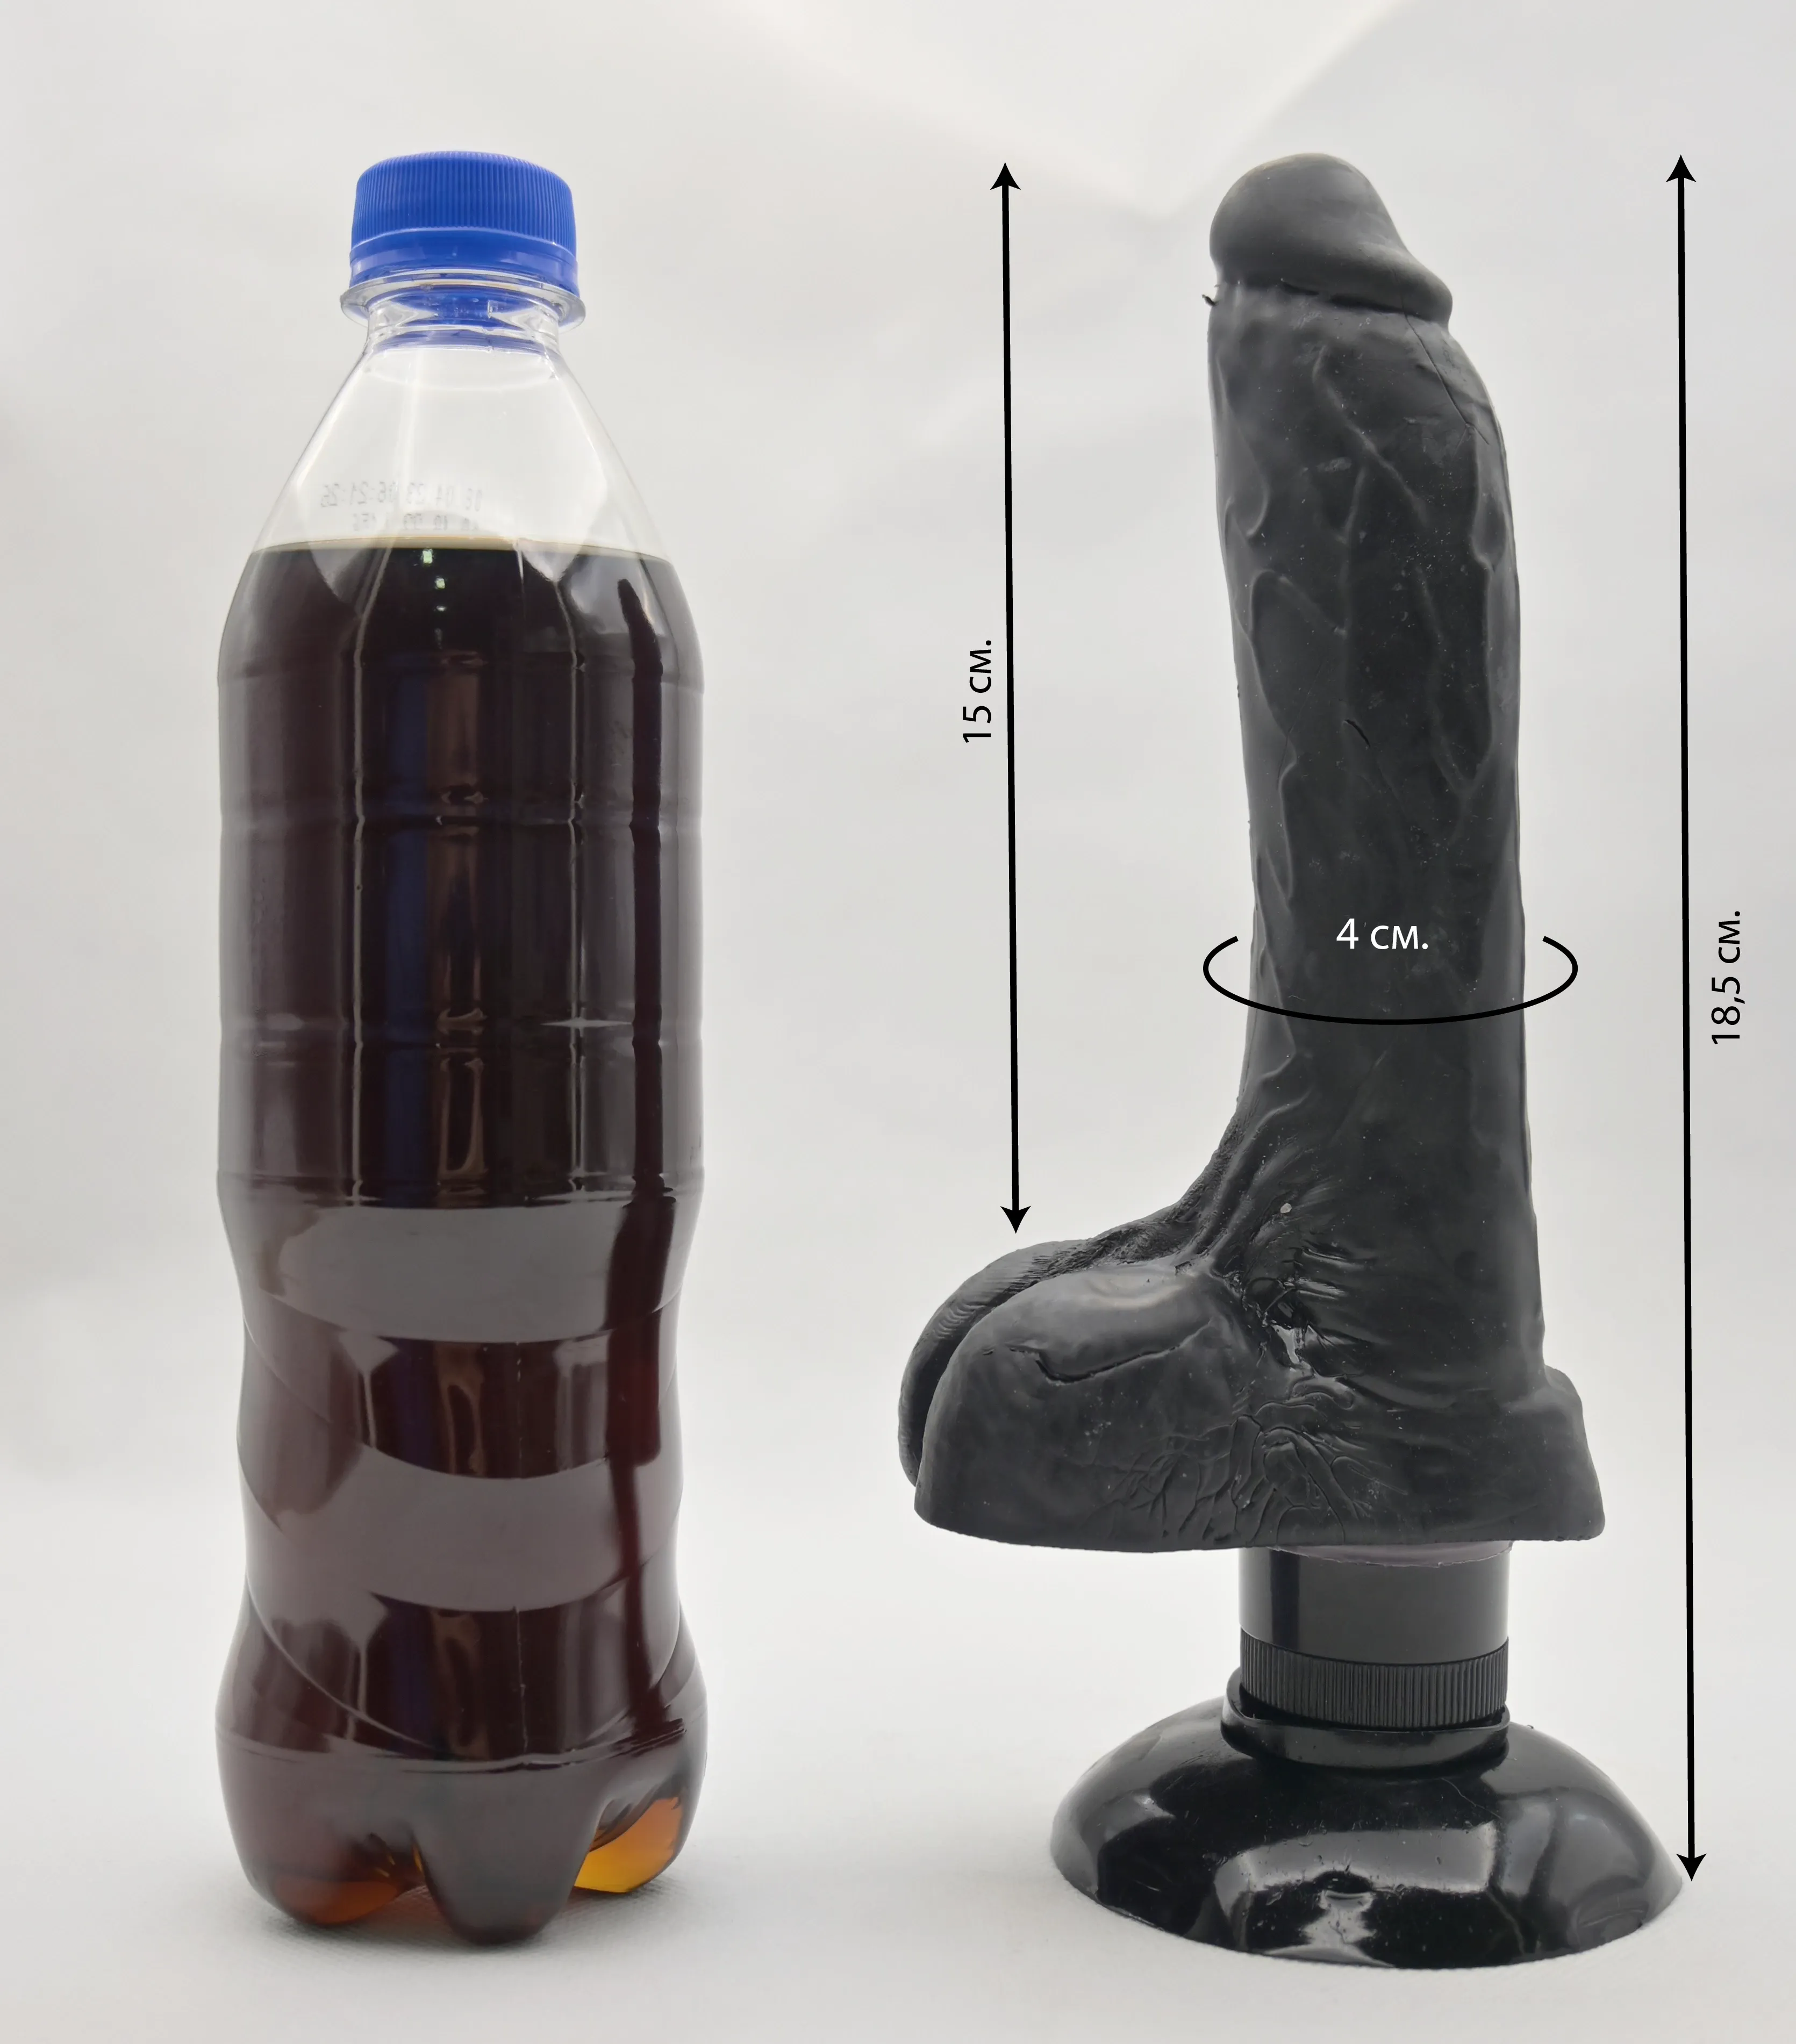 Размеры Base Cock и сравнение с бутылкой колы